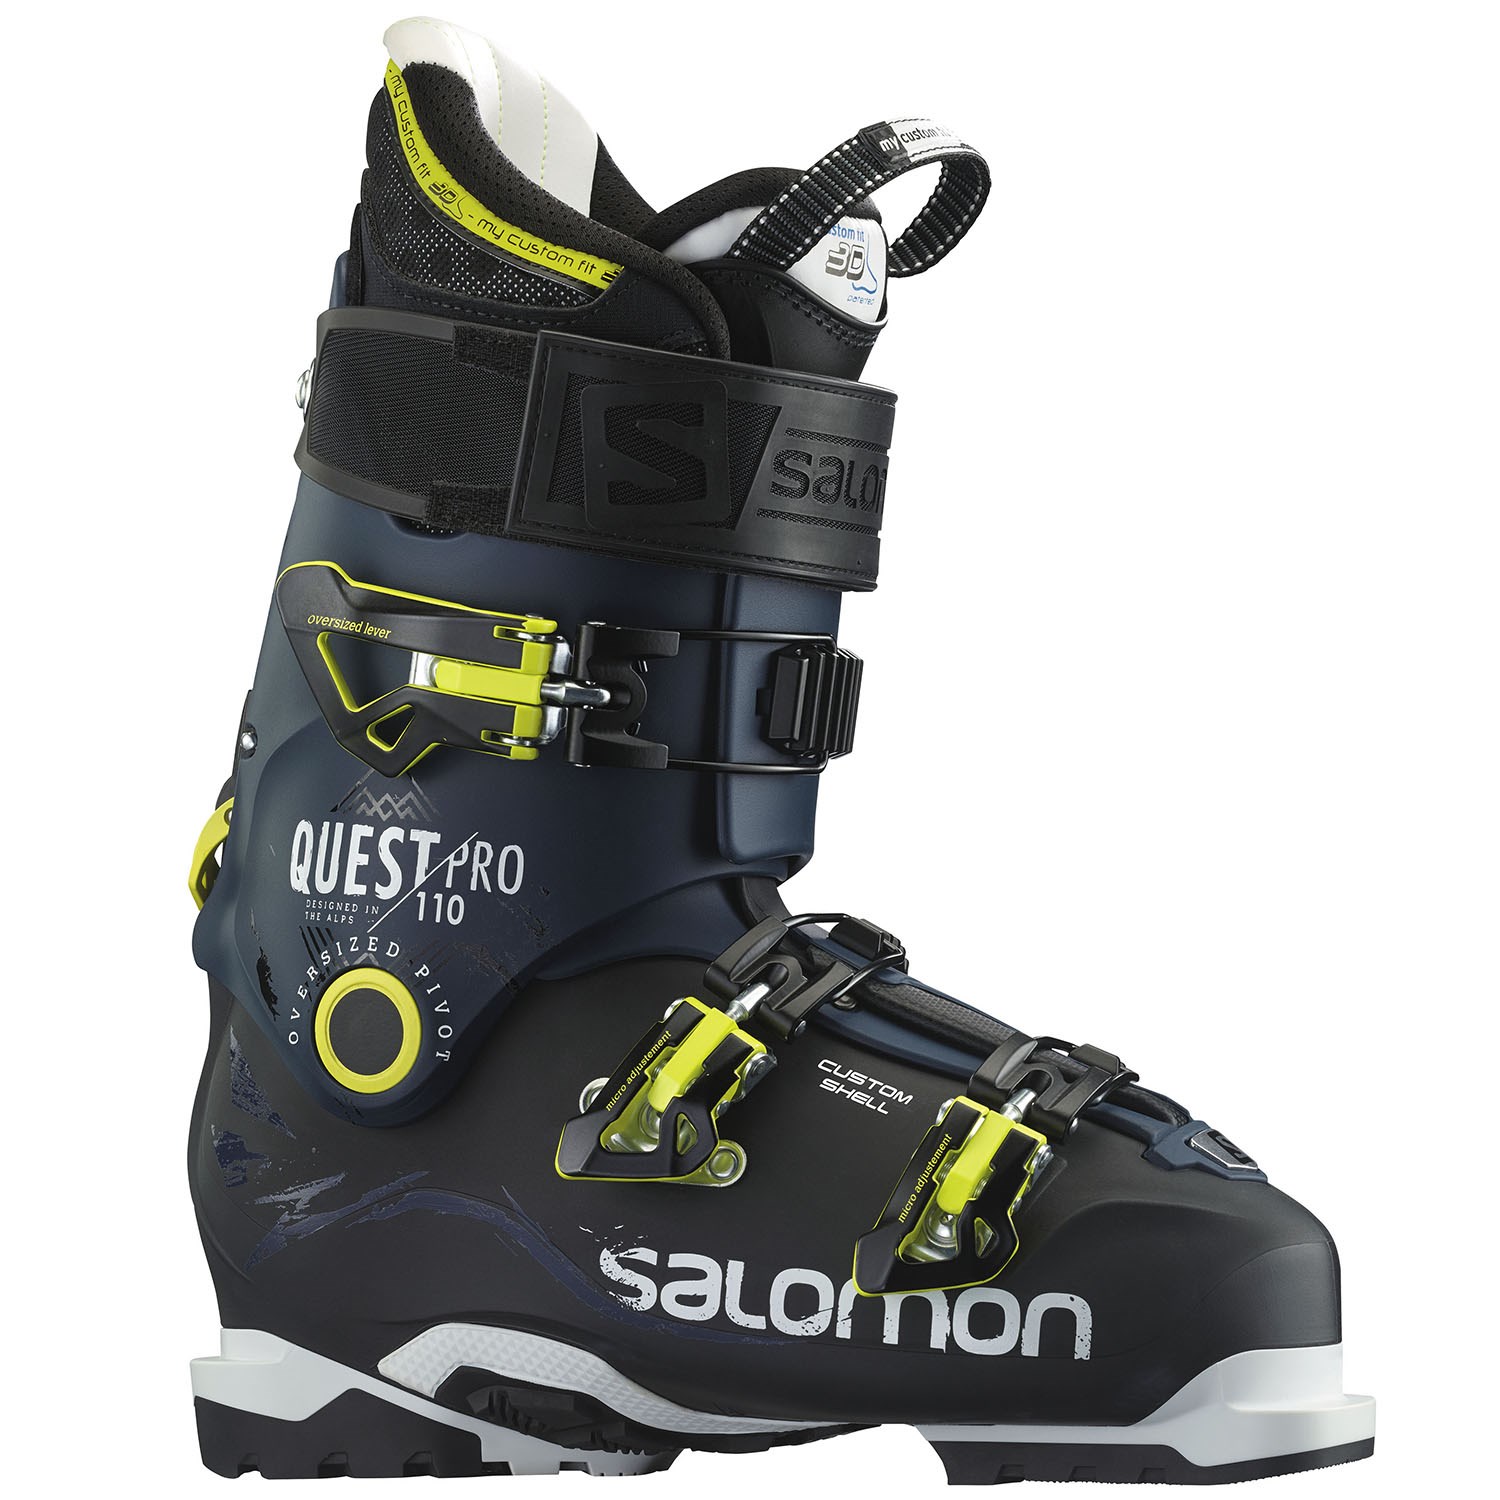 salomon ski boots salomon quest pro 110 ski boots 2016 | evo uhwfowo